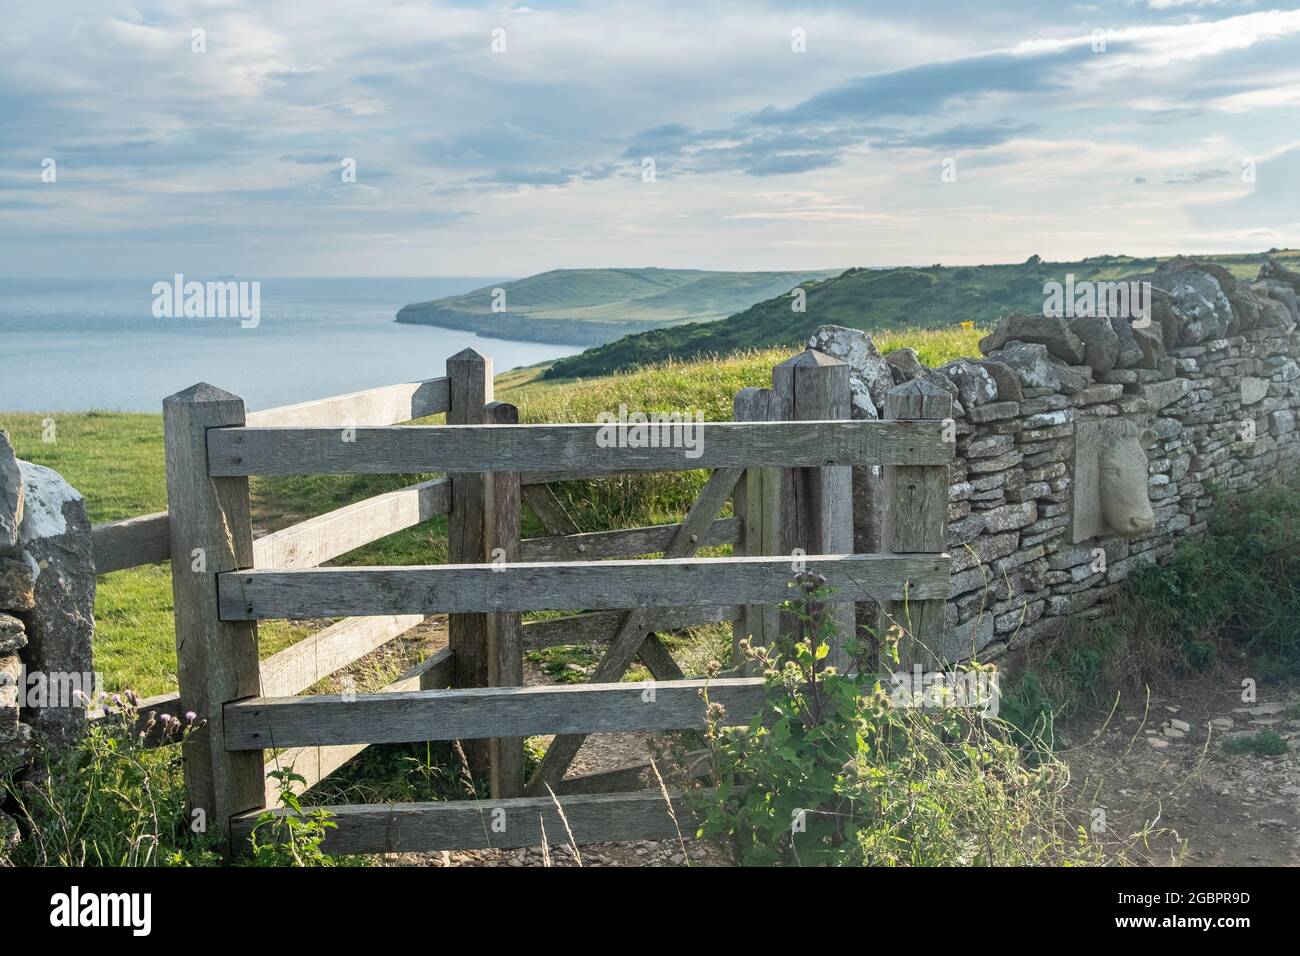 Dorset- Views from the Coastal path along the Jurassic Coast near Swanage Stock Photo